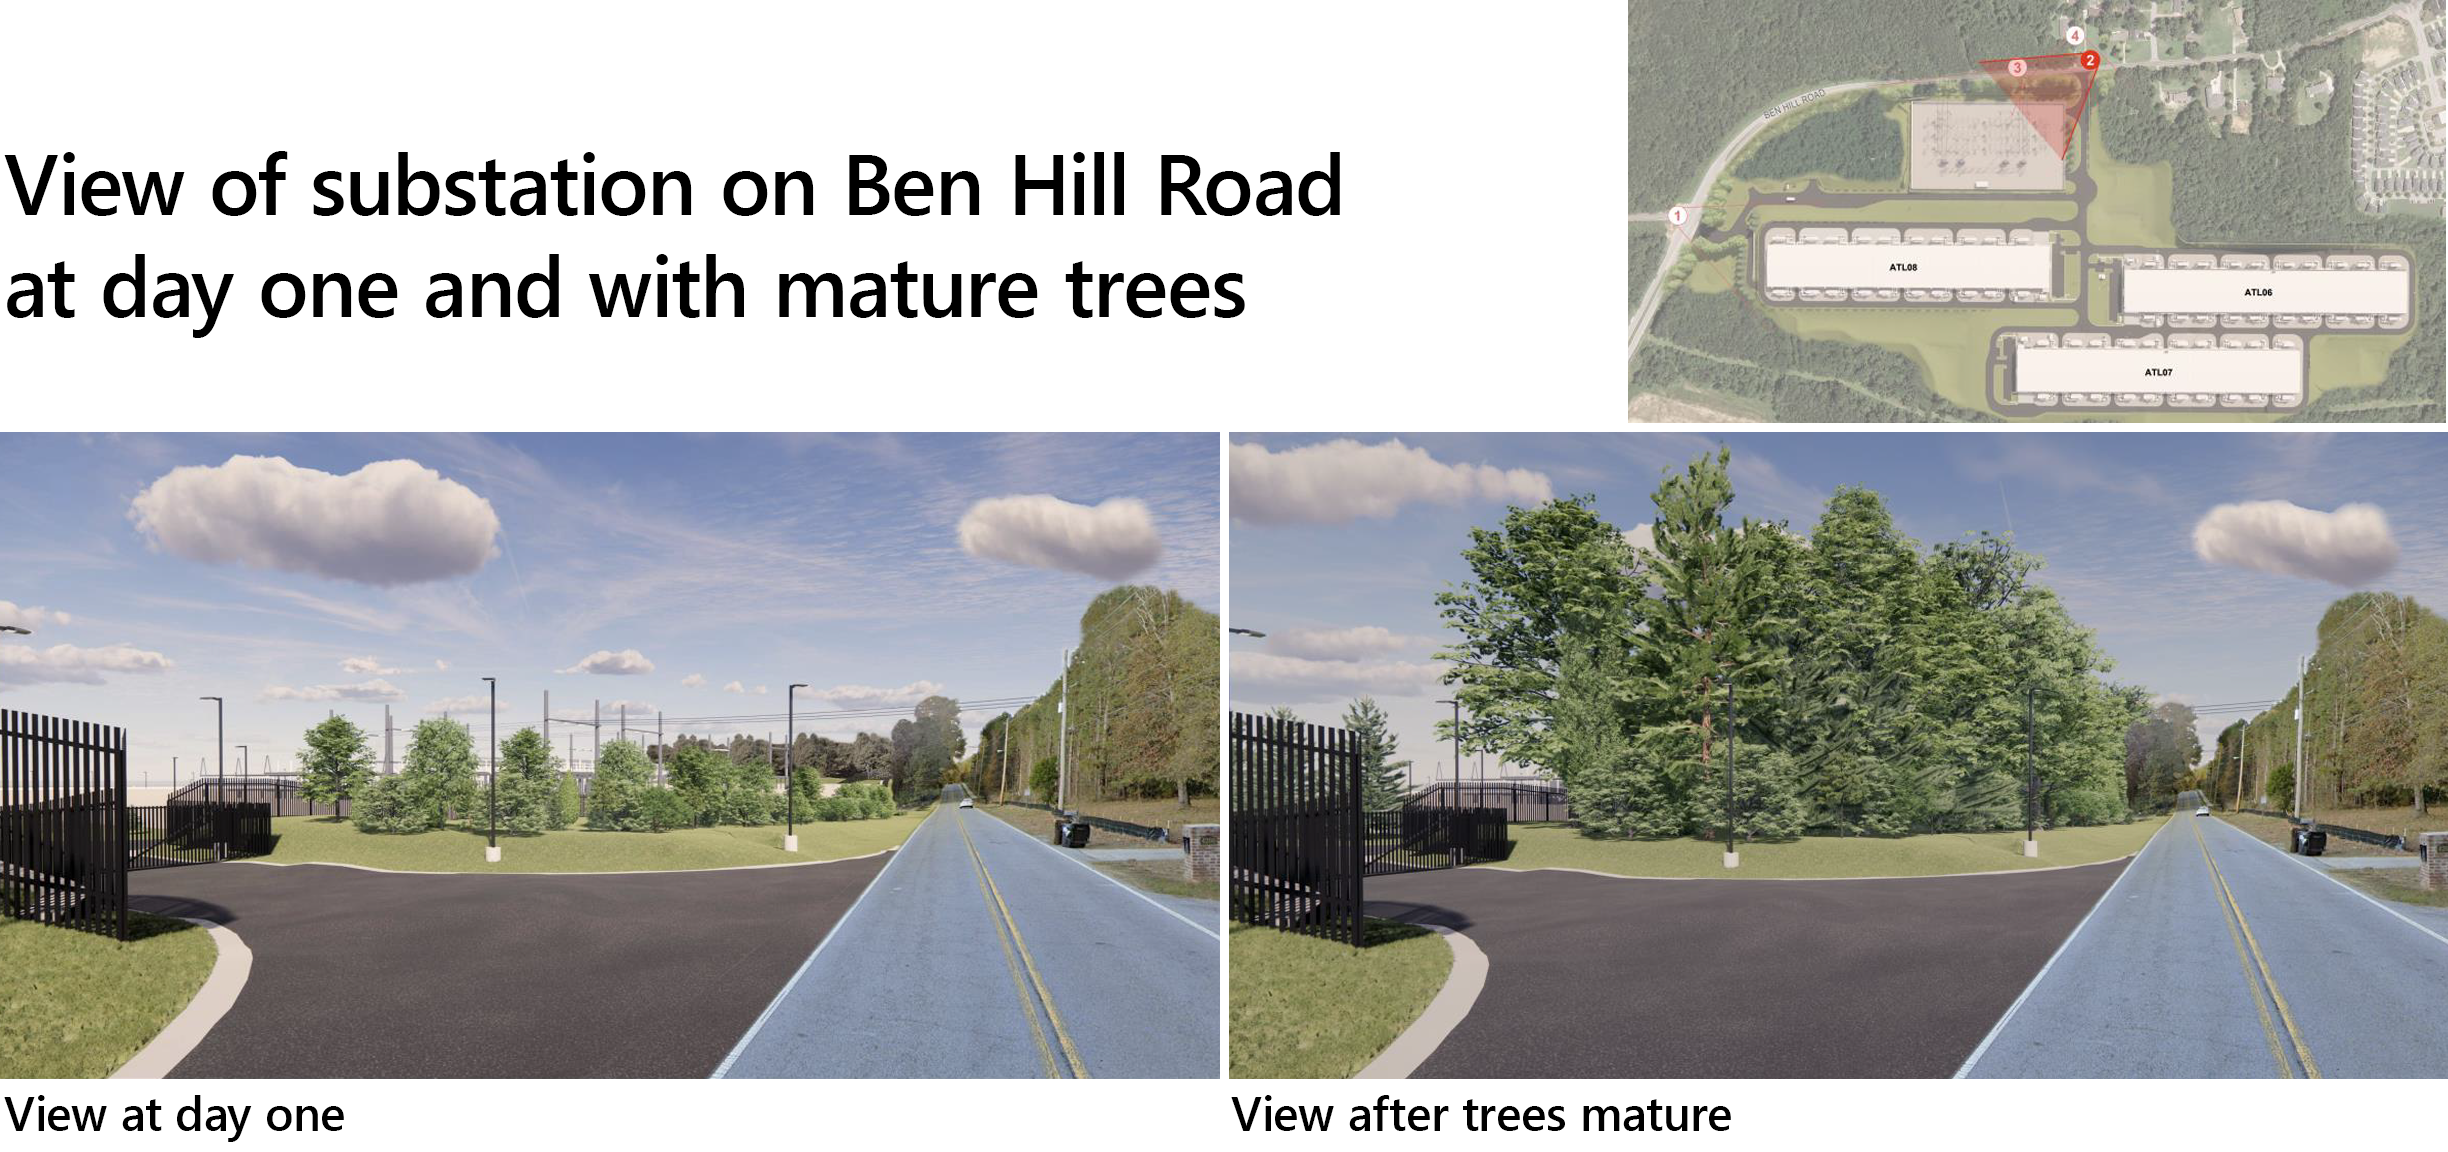 बेन हिल रोडवरील सबस्टेशनचे पहिल्या दिवशी दृश्य आणि परिपक्व झाडे